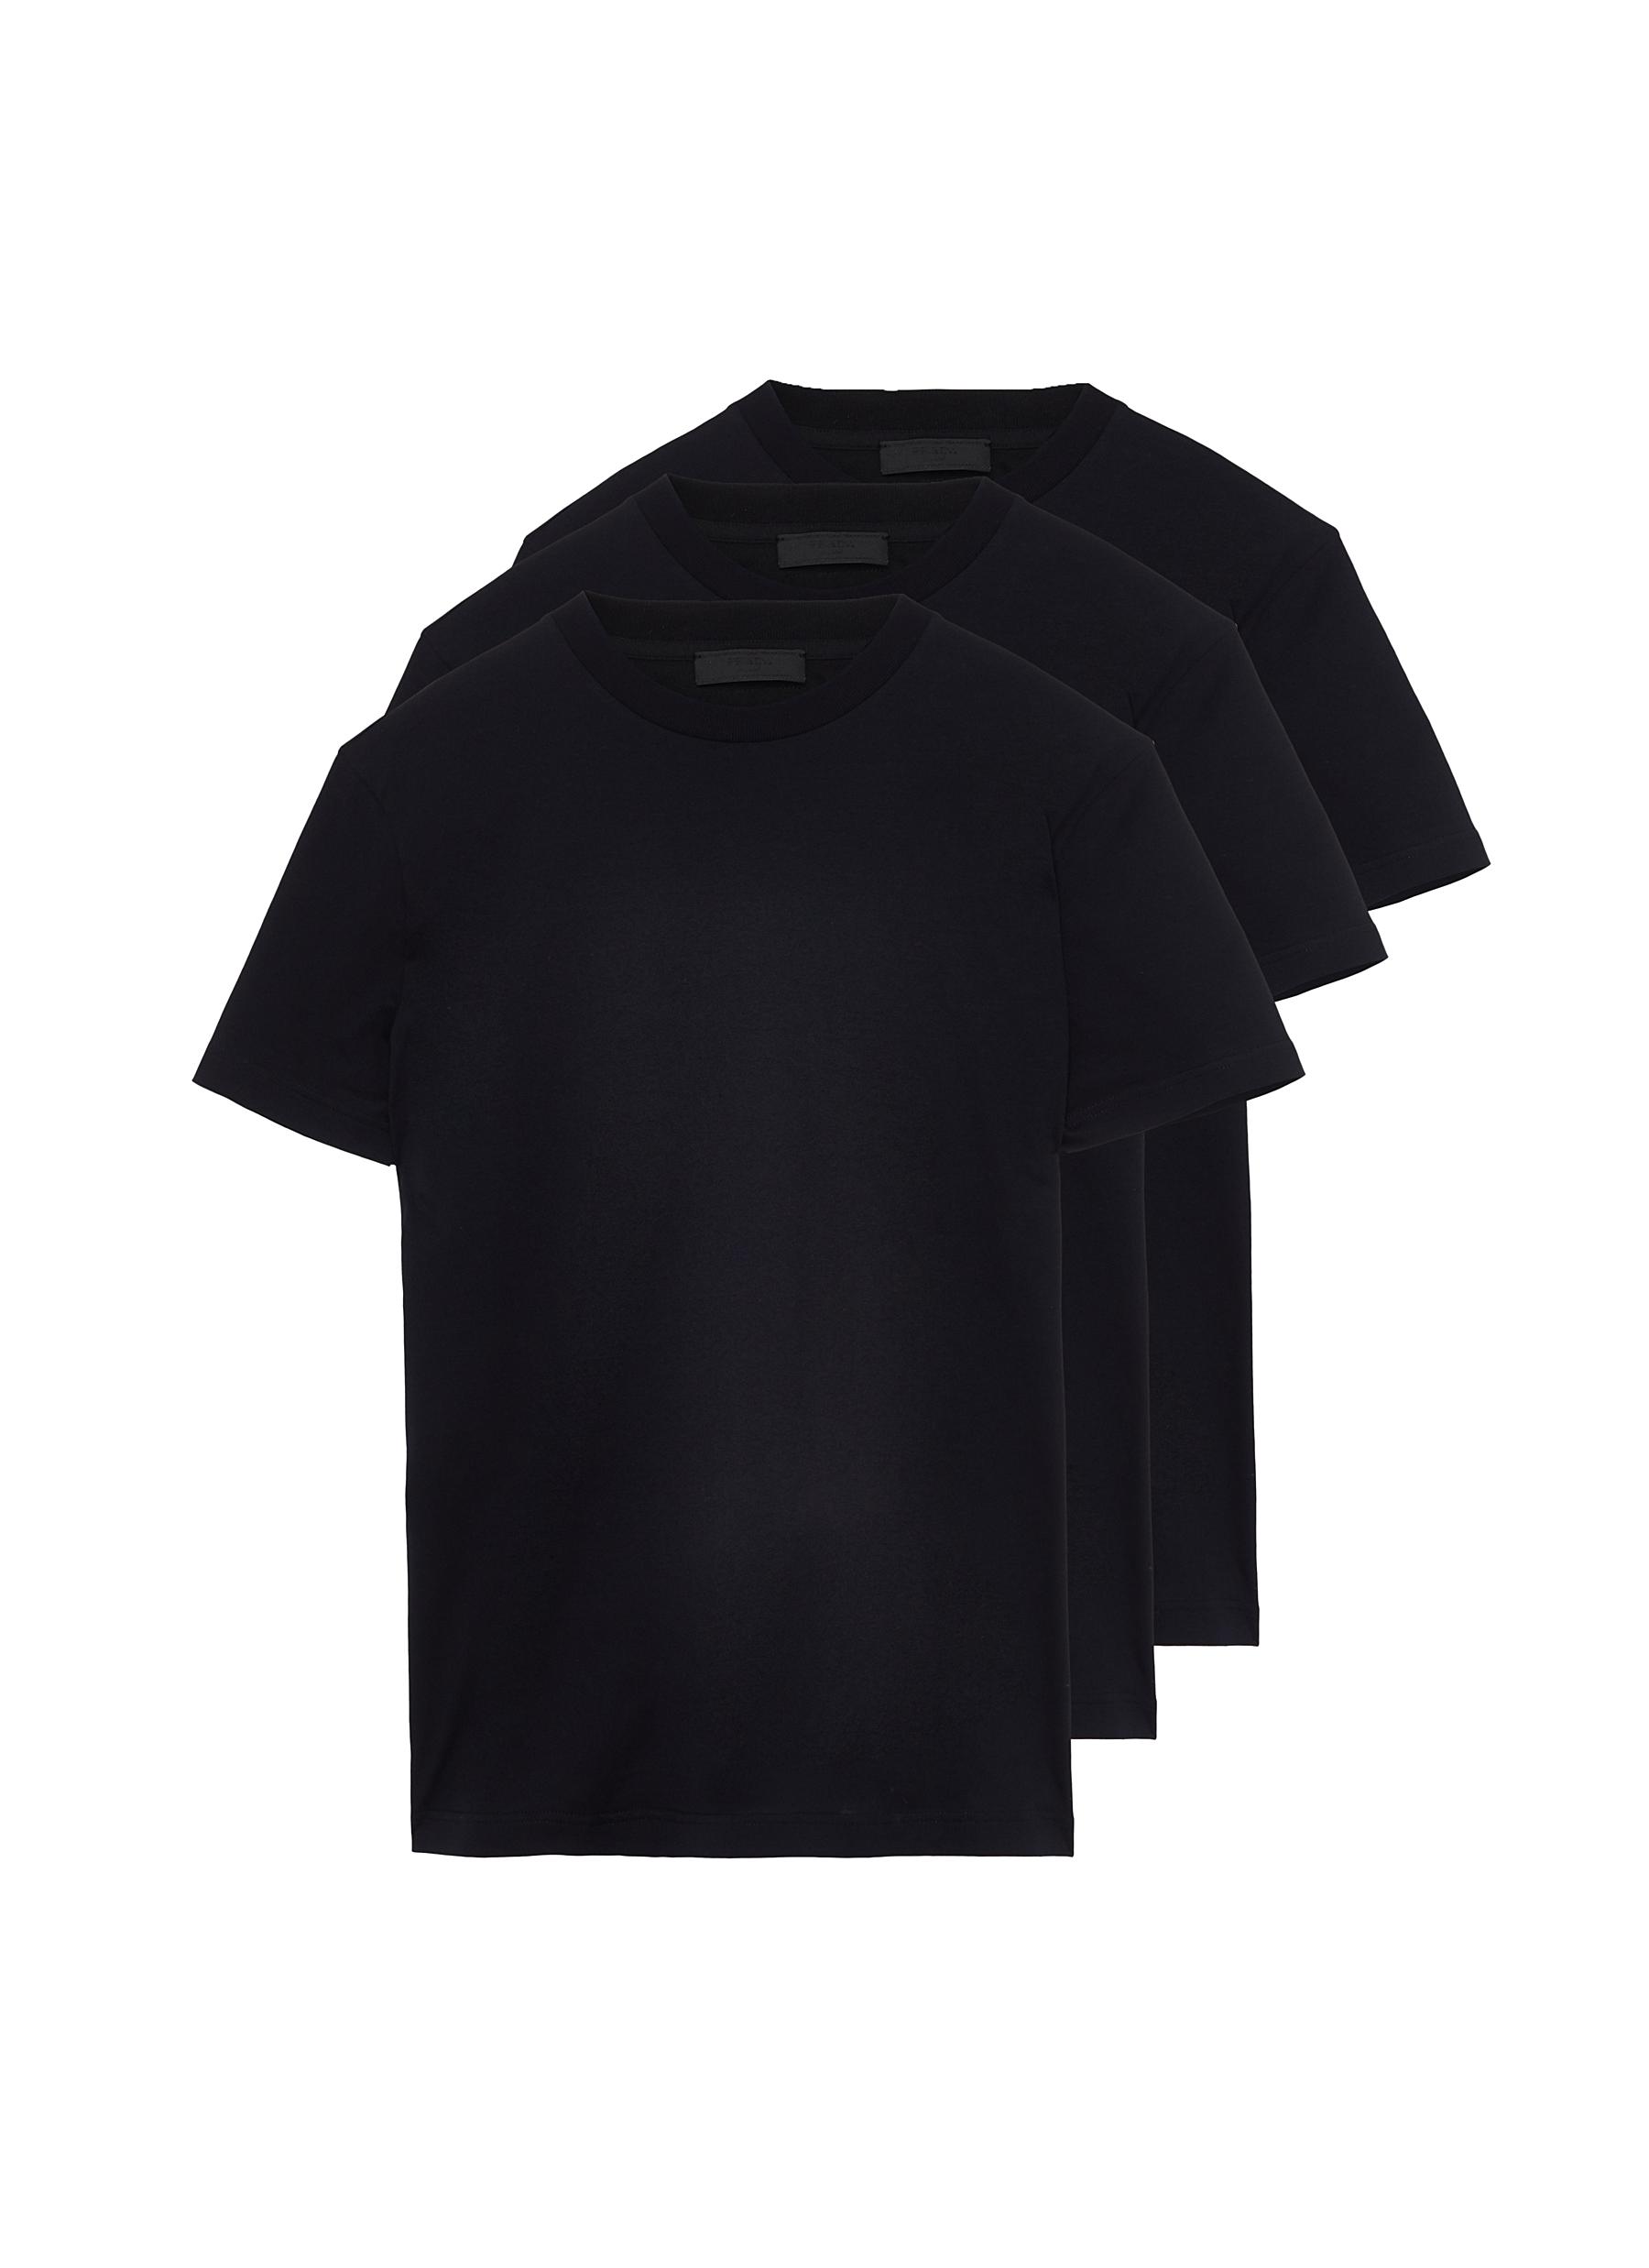 PRADA | Cotton Jersey T-shirt 3-Pack Set | Men | Lane Crawford